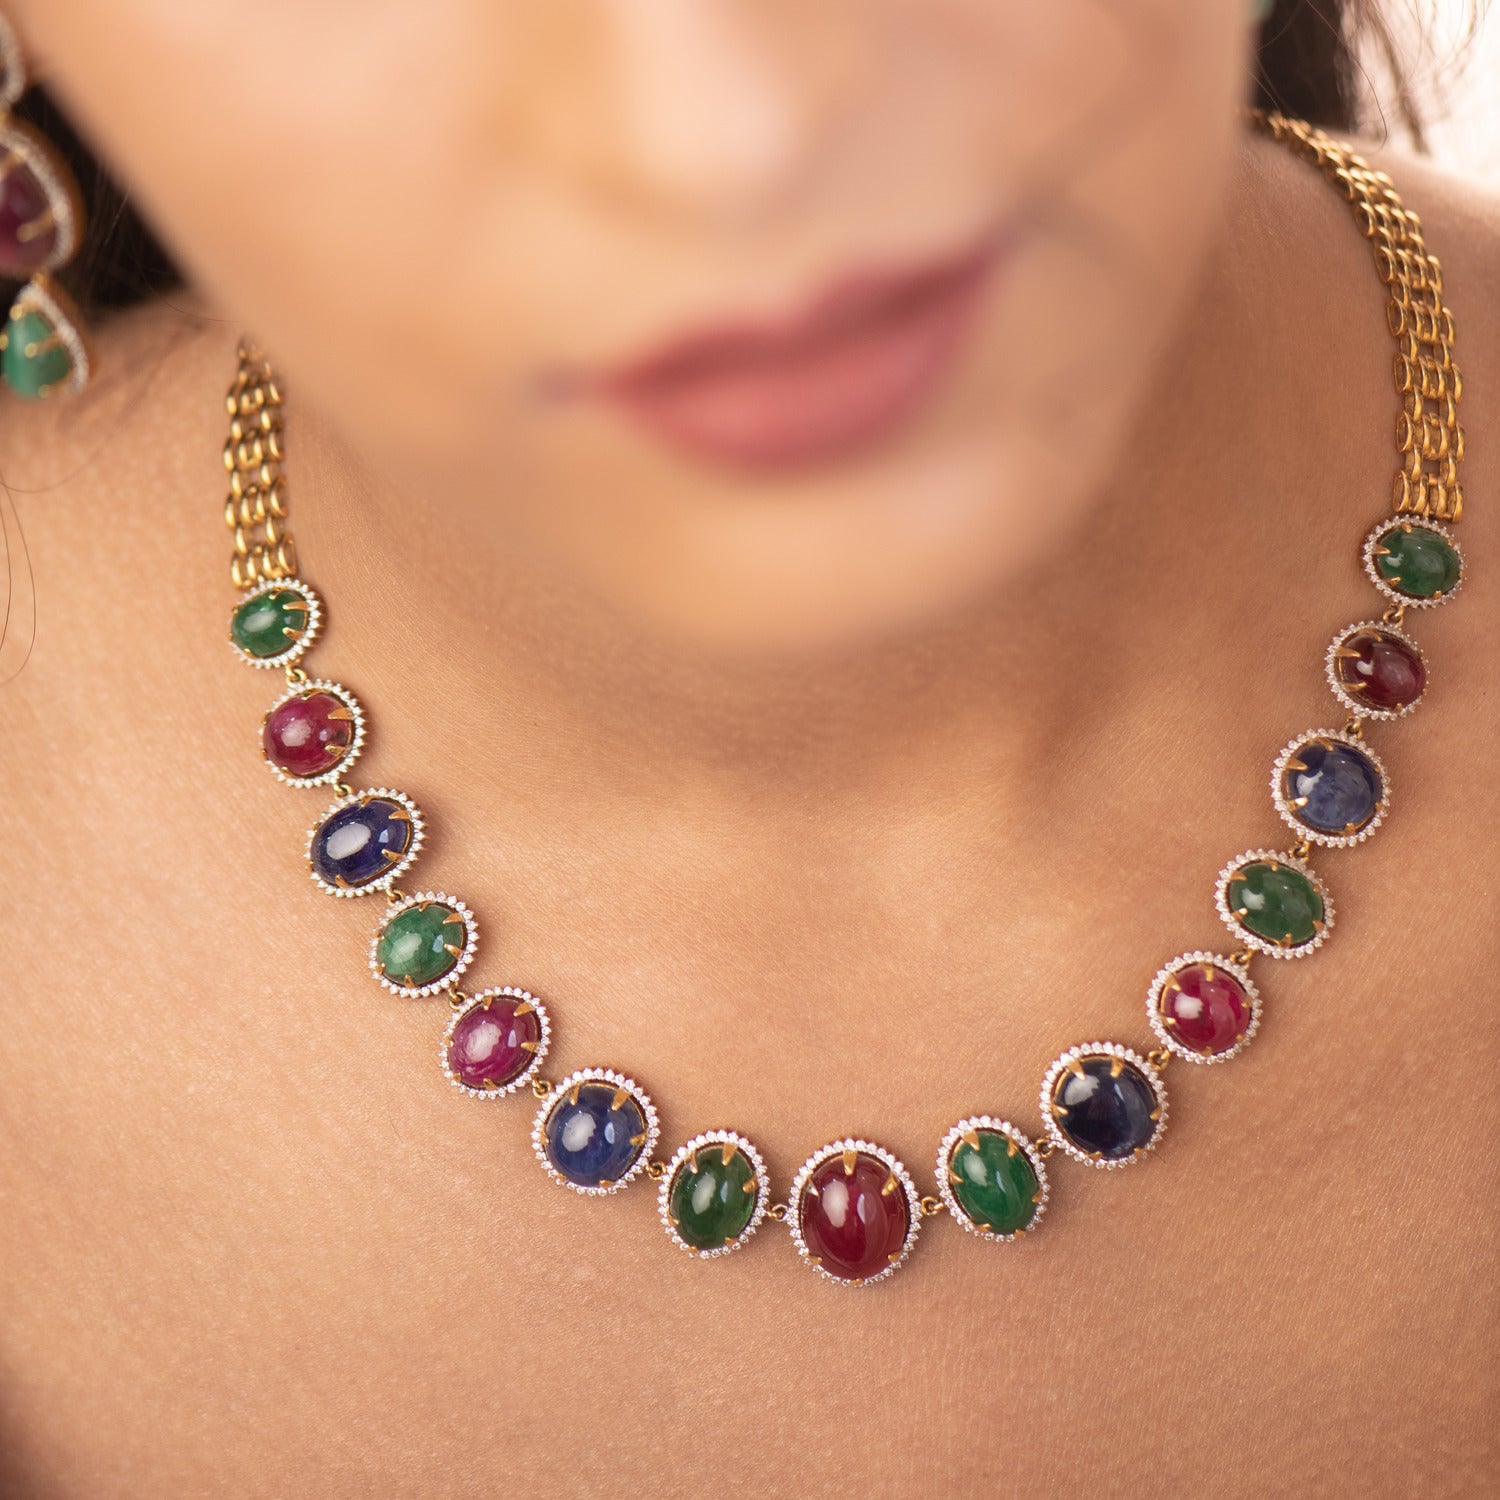 Beyond Precious Gems Diamond Necklace | Pearls